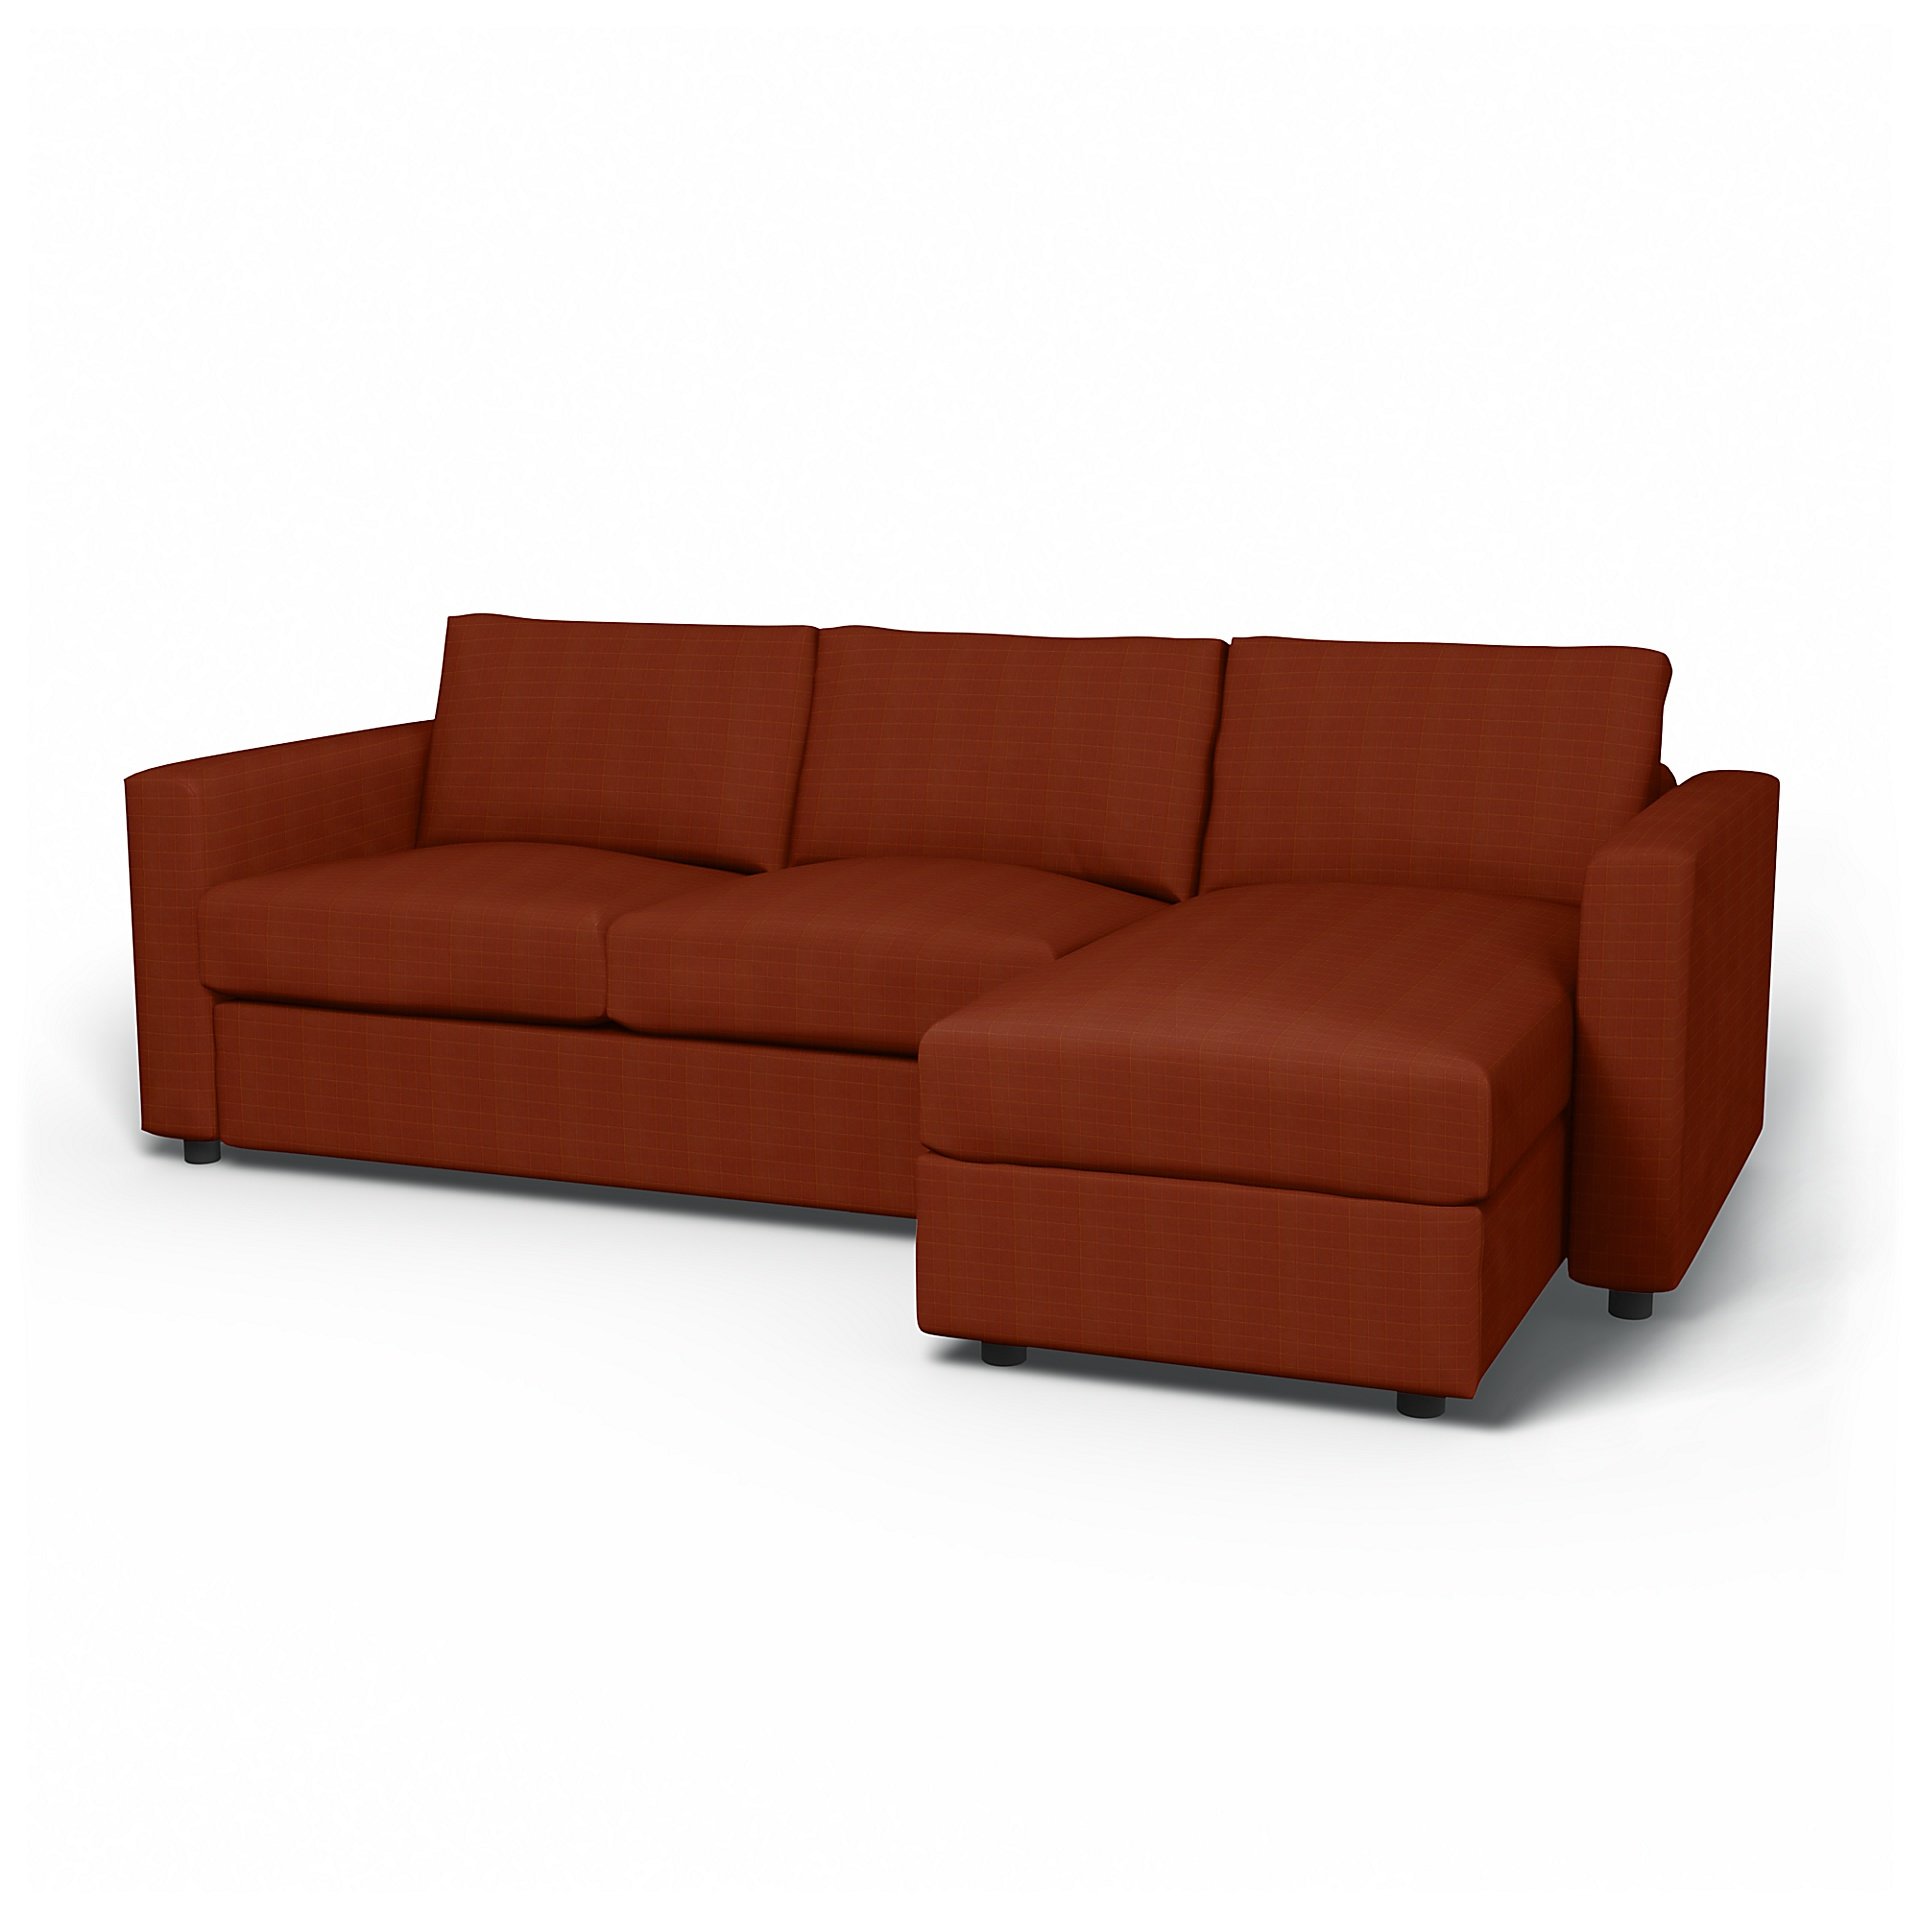 IKEA - Vimle 2 Seater Sofa with Chaise Cover, Burnt Sienna, Velvet - Bemz